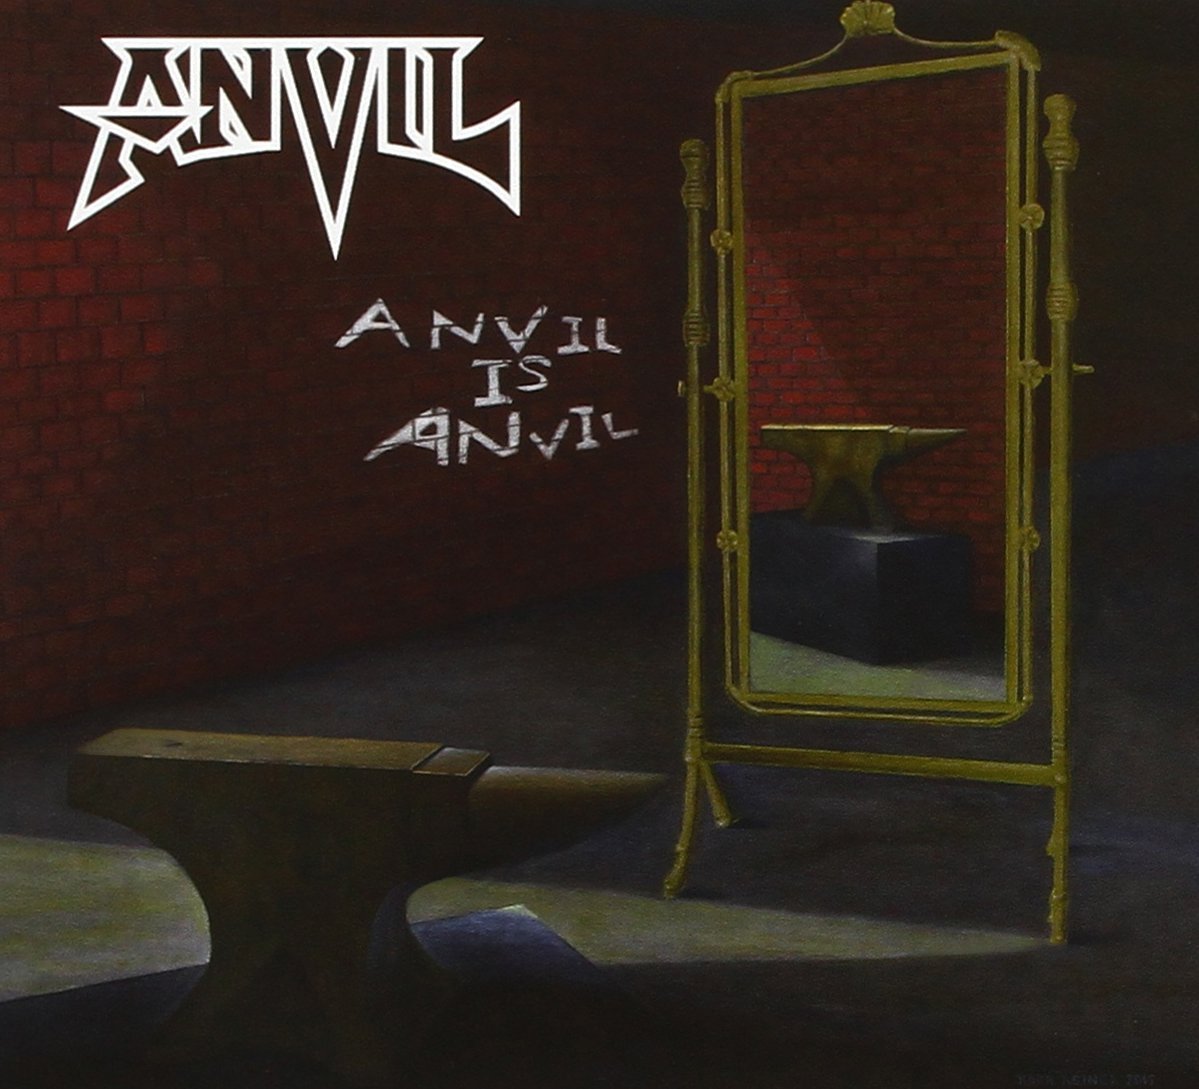 Anvil : Anvil Is Anvil